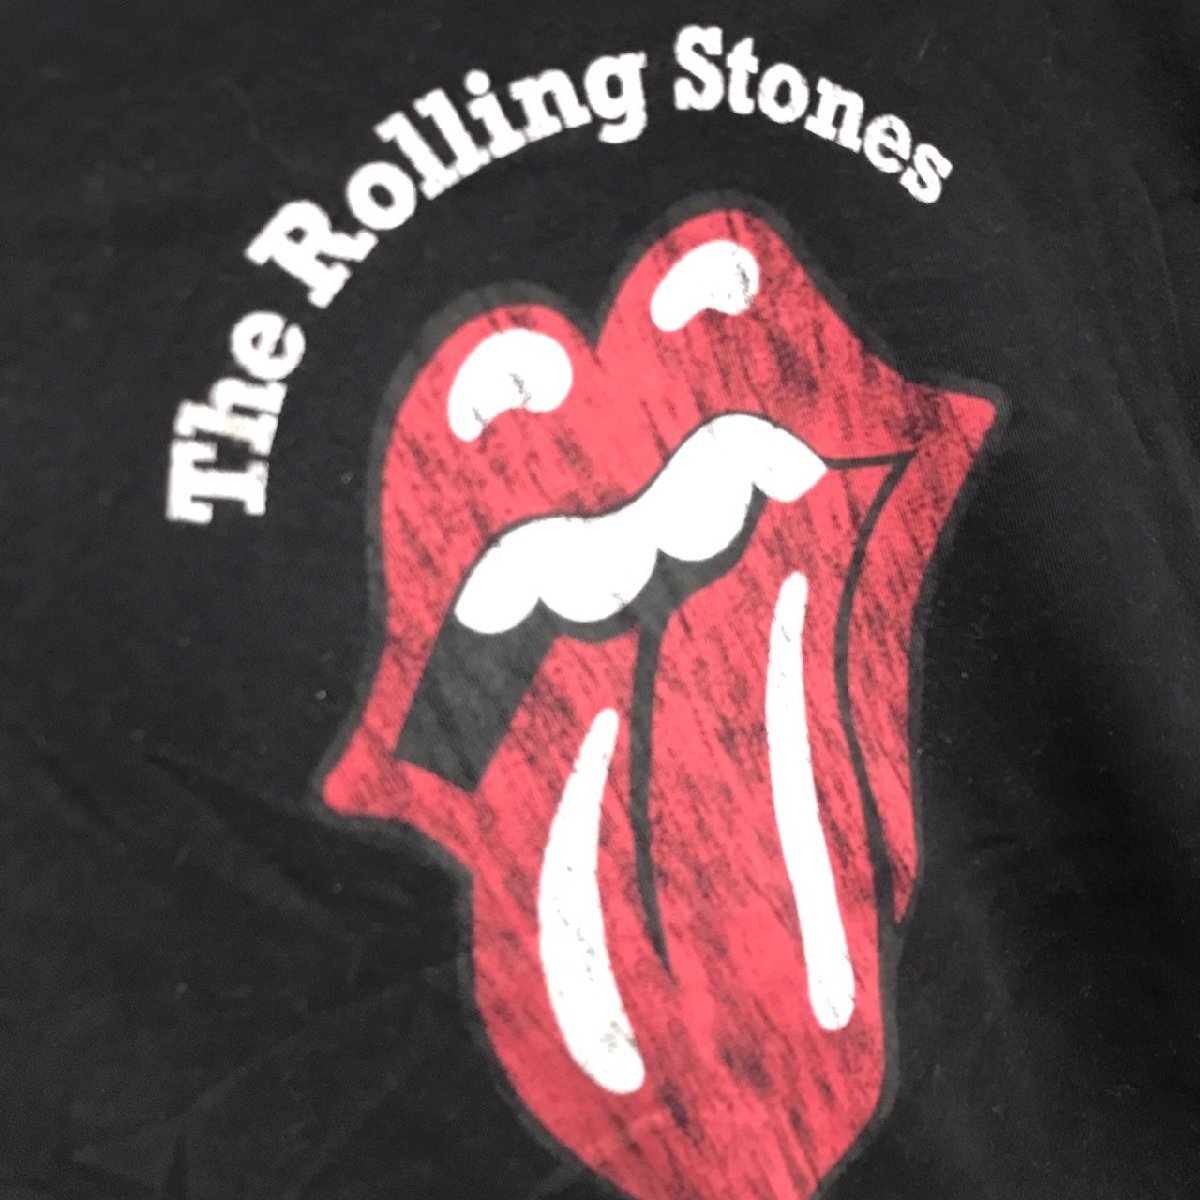 (^w^)b GU ジーユー the Rolling Stones ローリング ストーンズ デザイン リンガー T Tee シャツ チビT ロック バンド ブラック S 8706iE_画像7